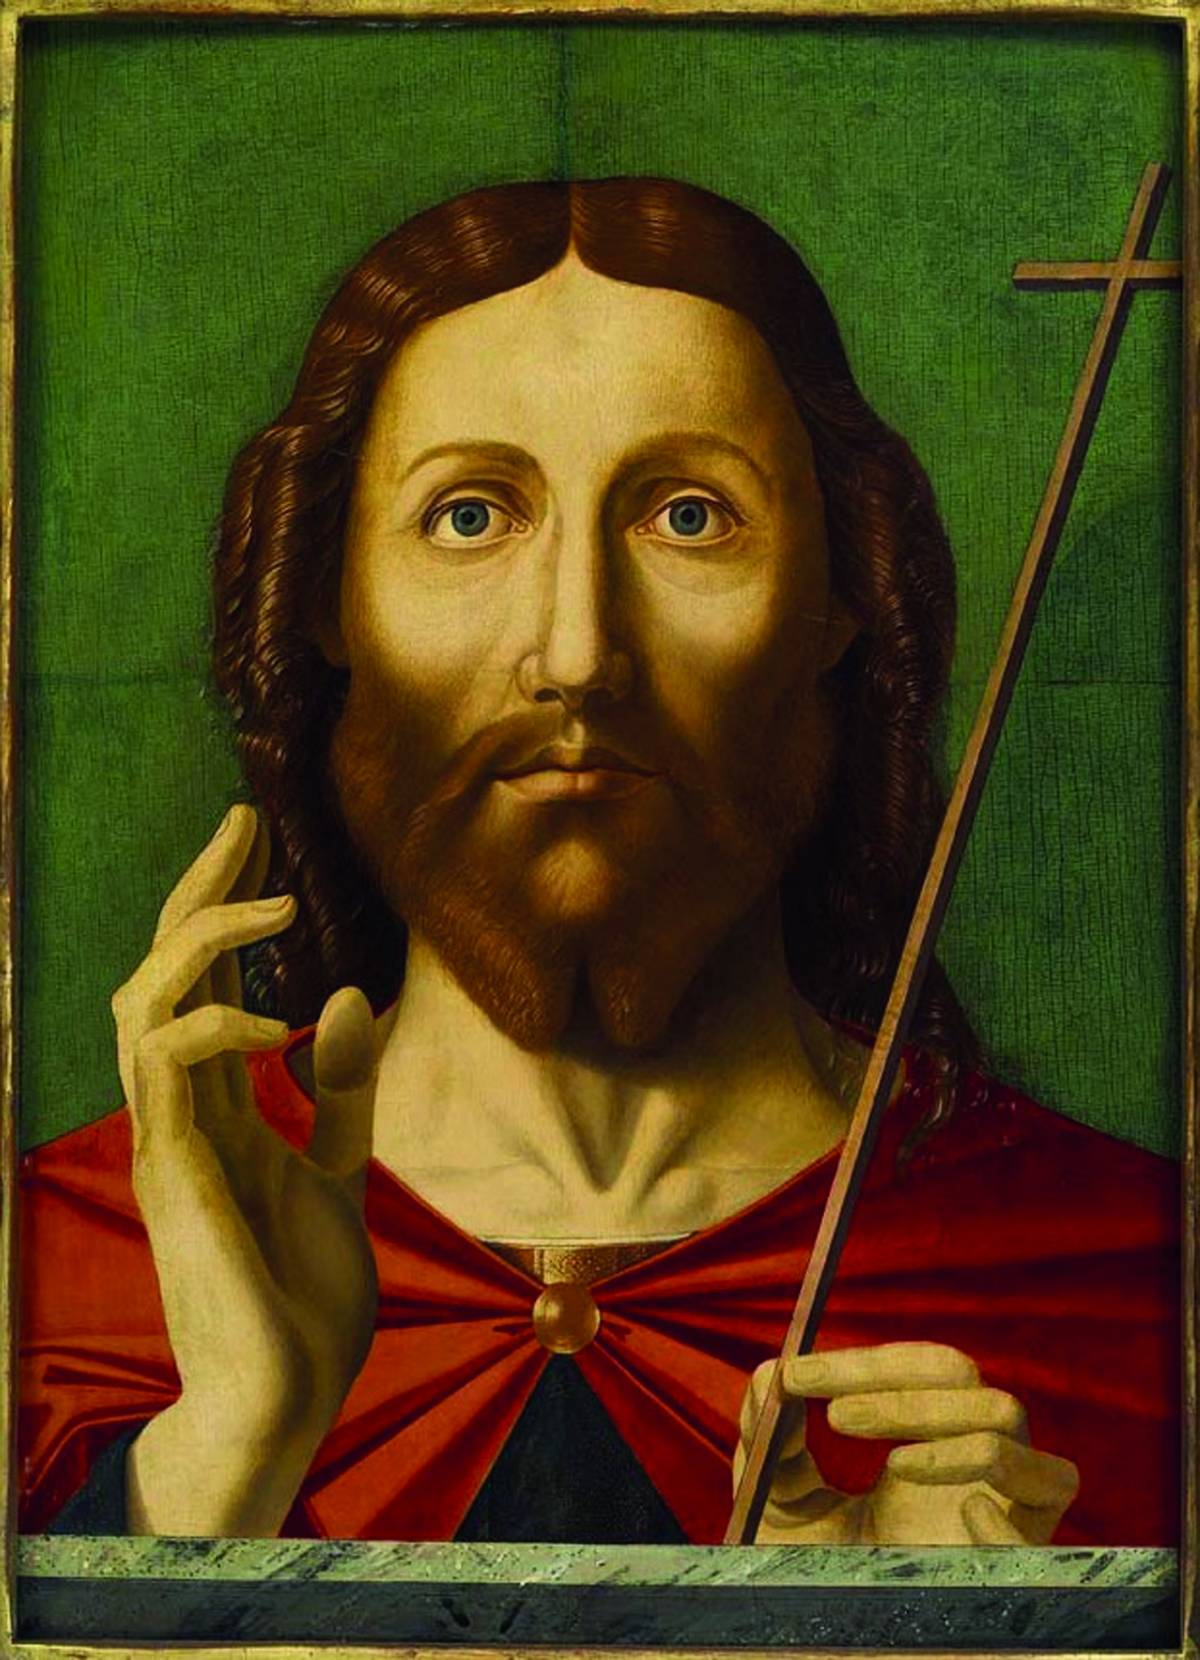 Il Cristo esangue e irreale di Jacopo da Valenza